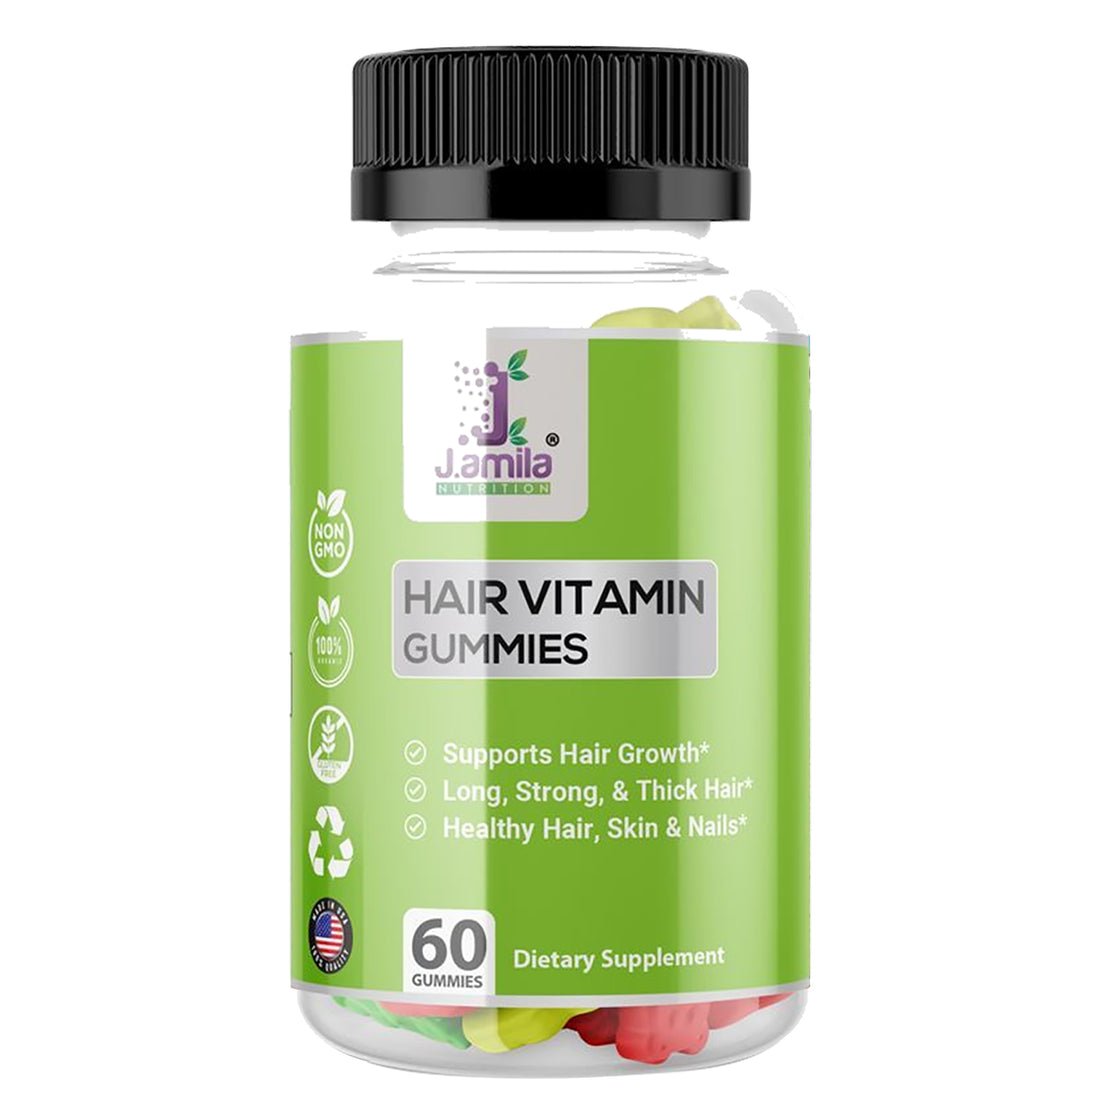 J.AMILA® Hair Vitamin Gummies